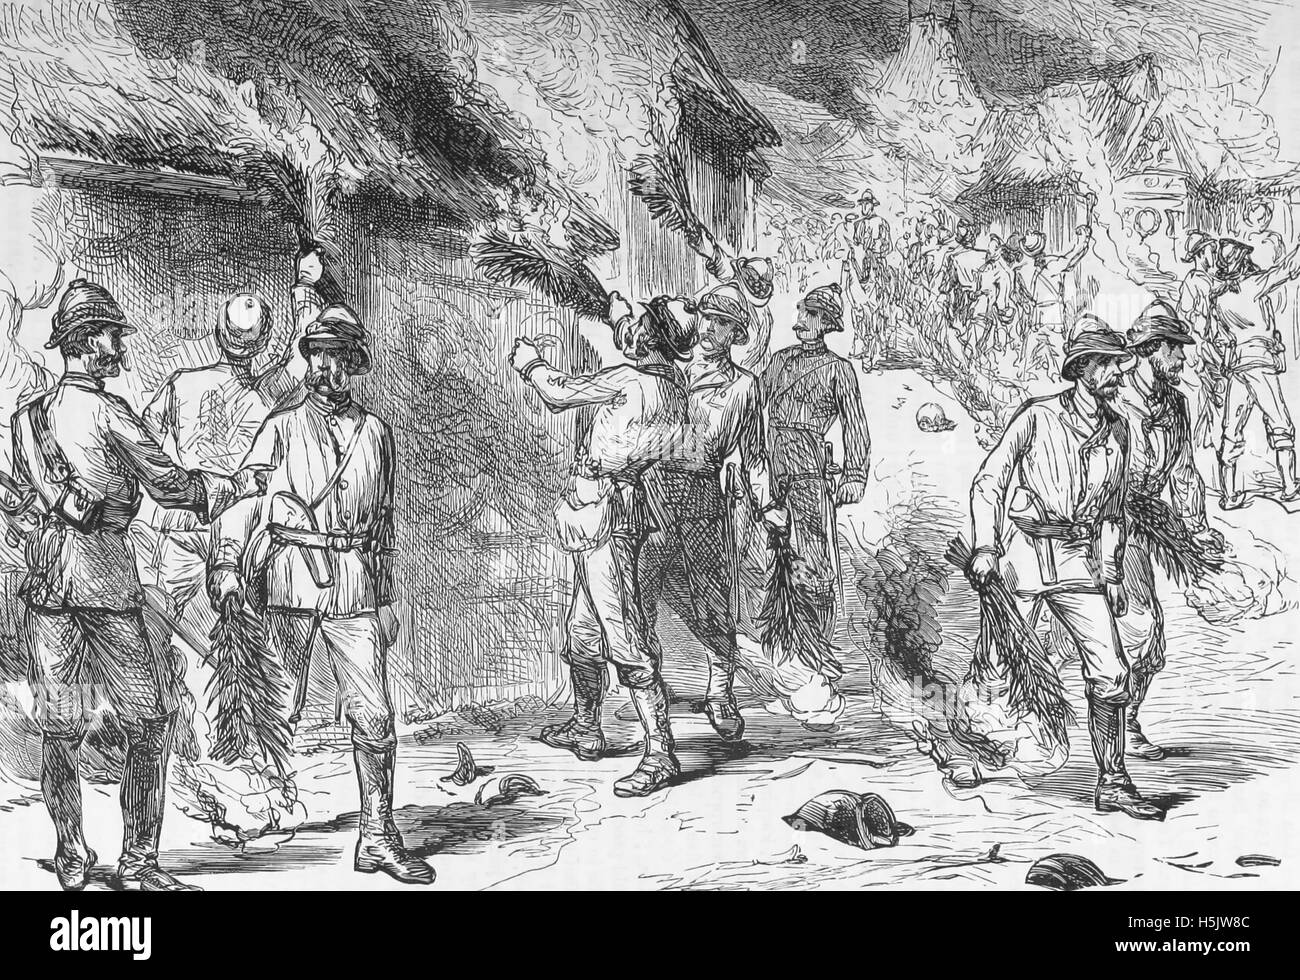 Troisième guerre ASHANTI 1873-1874 Les troupes britanniques ont mis le feu à Kumasi le 4 février 1874. Gravure tirée de l'illustration Banque D'Images